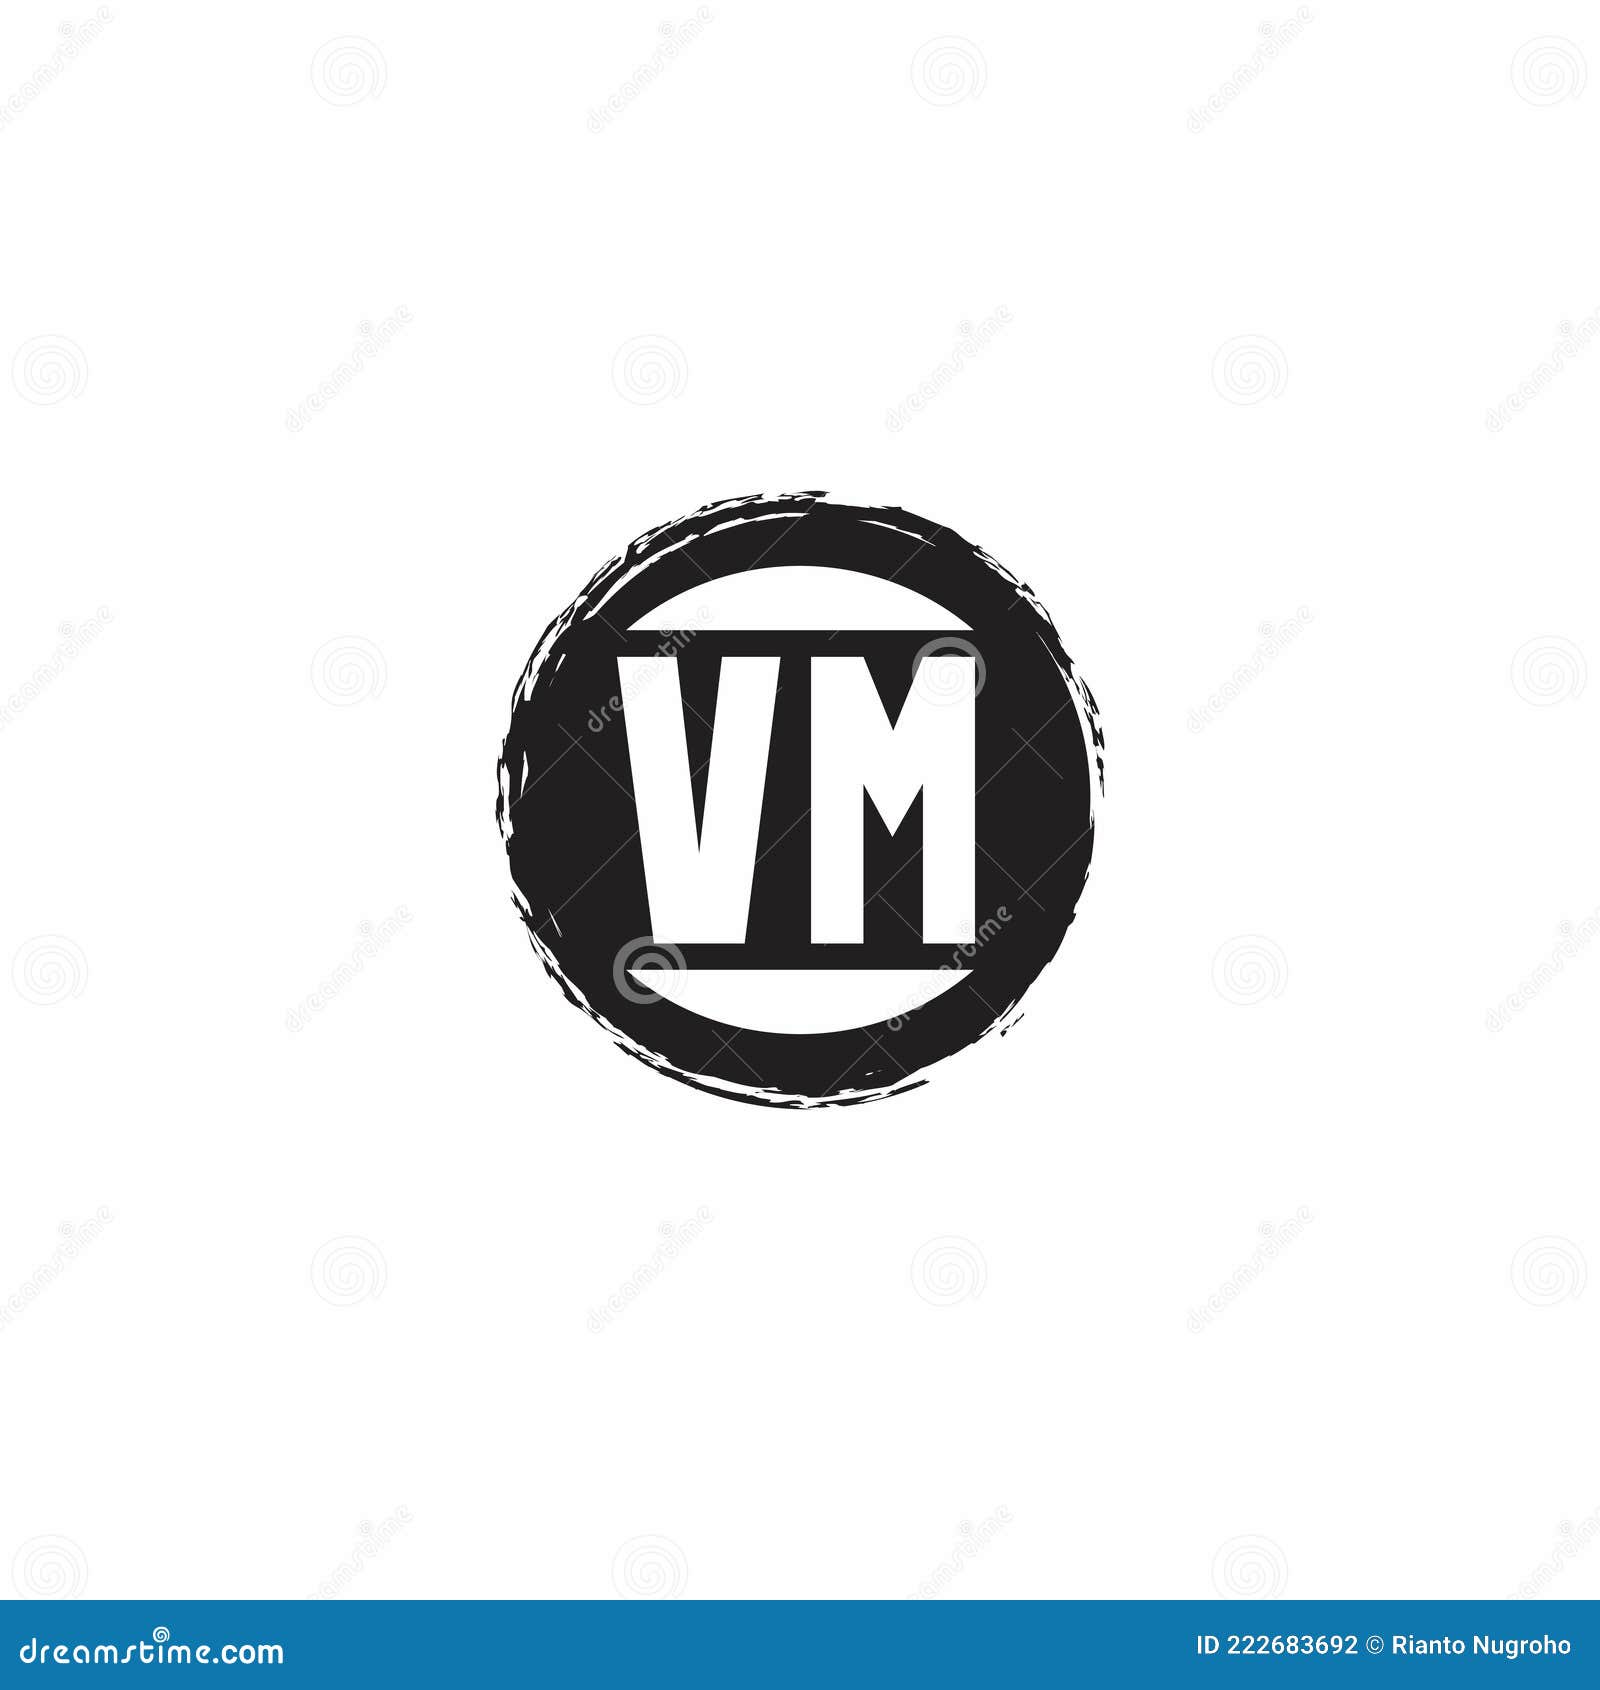 VM monogram được sử dụng phổ biến như một biểu tượng đại diện cho nhiều thương hiệu khác nhau. Hãy xem hình ảnh liên quan để khám phá cách thiết kế độc đáo của biểu tượng này cùng với ý nghĩa mà nó mang lại cho thương hiệu.